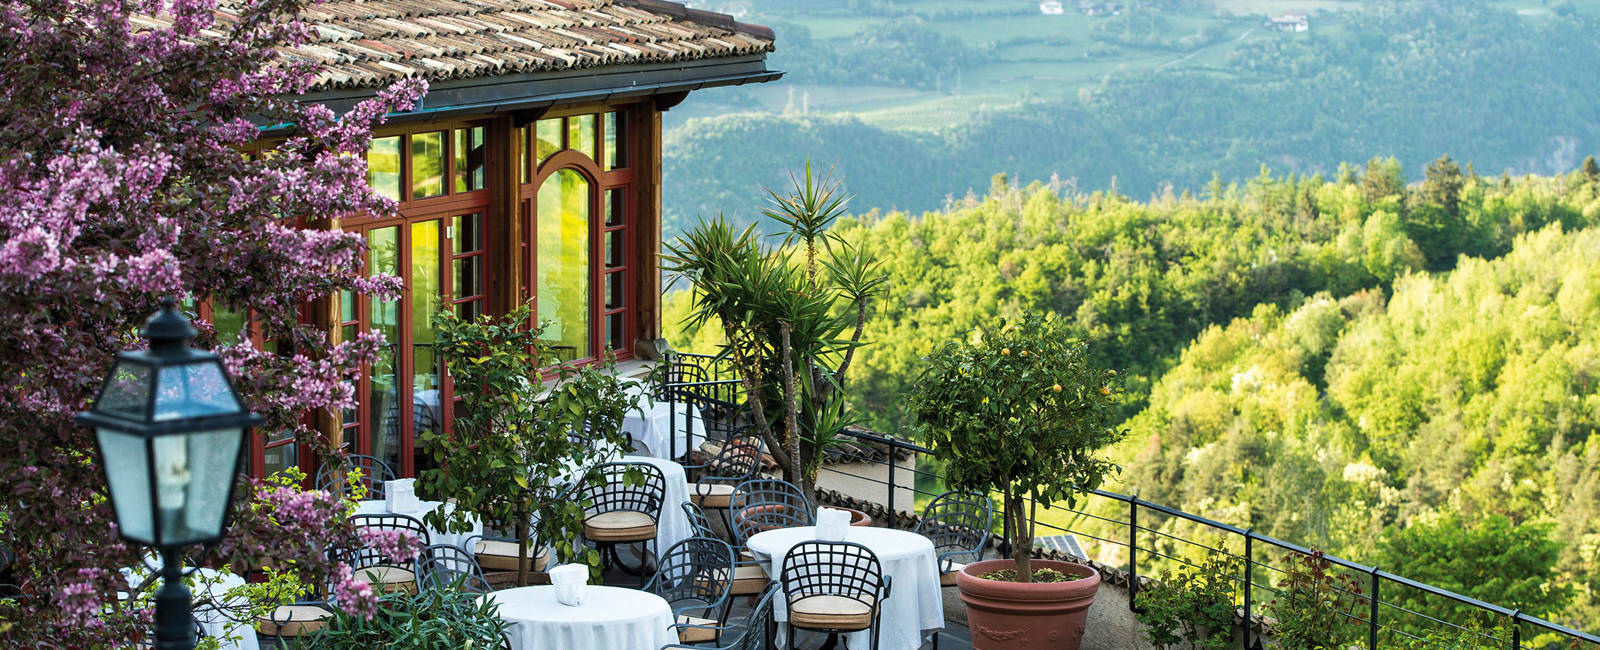  Südtirol 

Die besten romantischen Hotels – Genussoasen